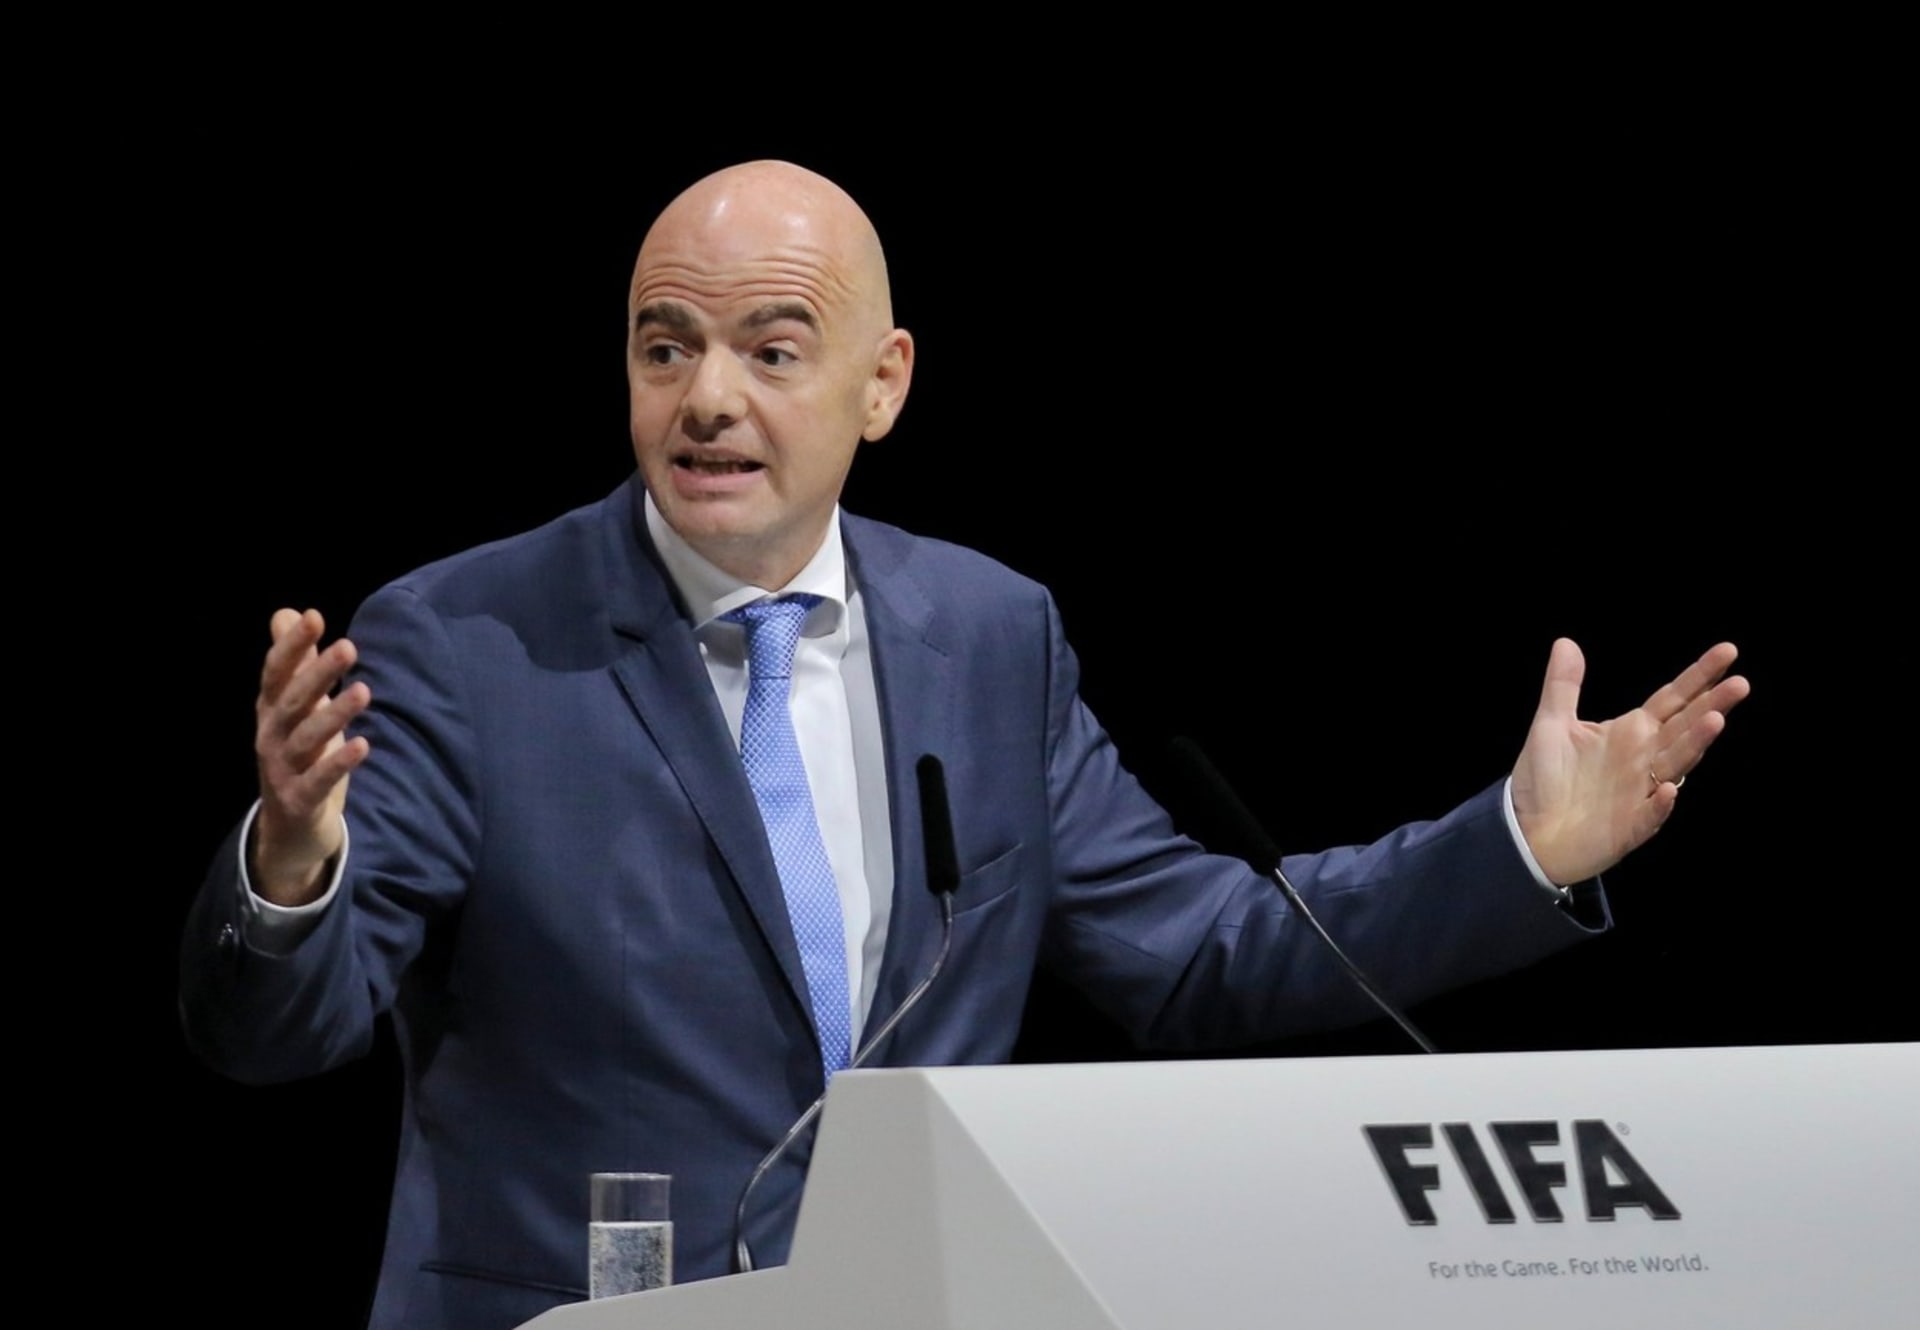 Šéf FIFA pobouřil fotbalové fanoušky 1